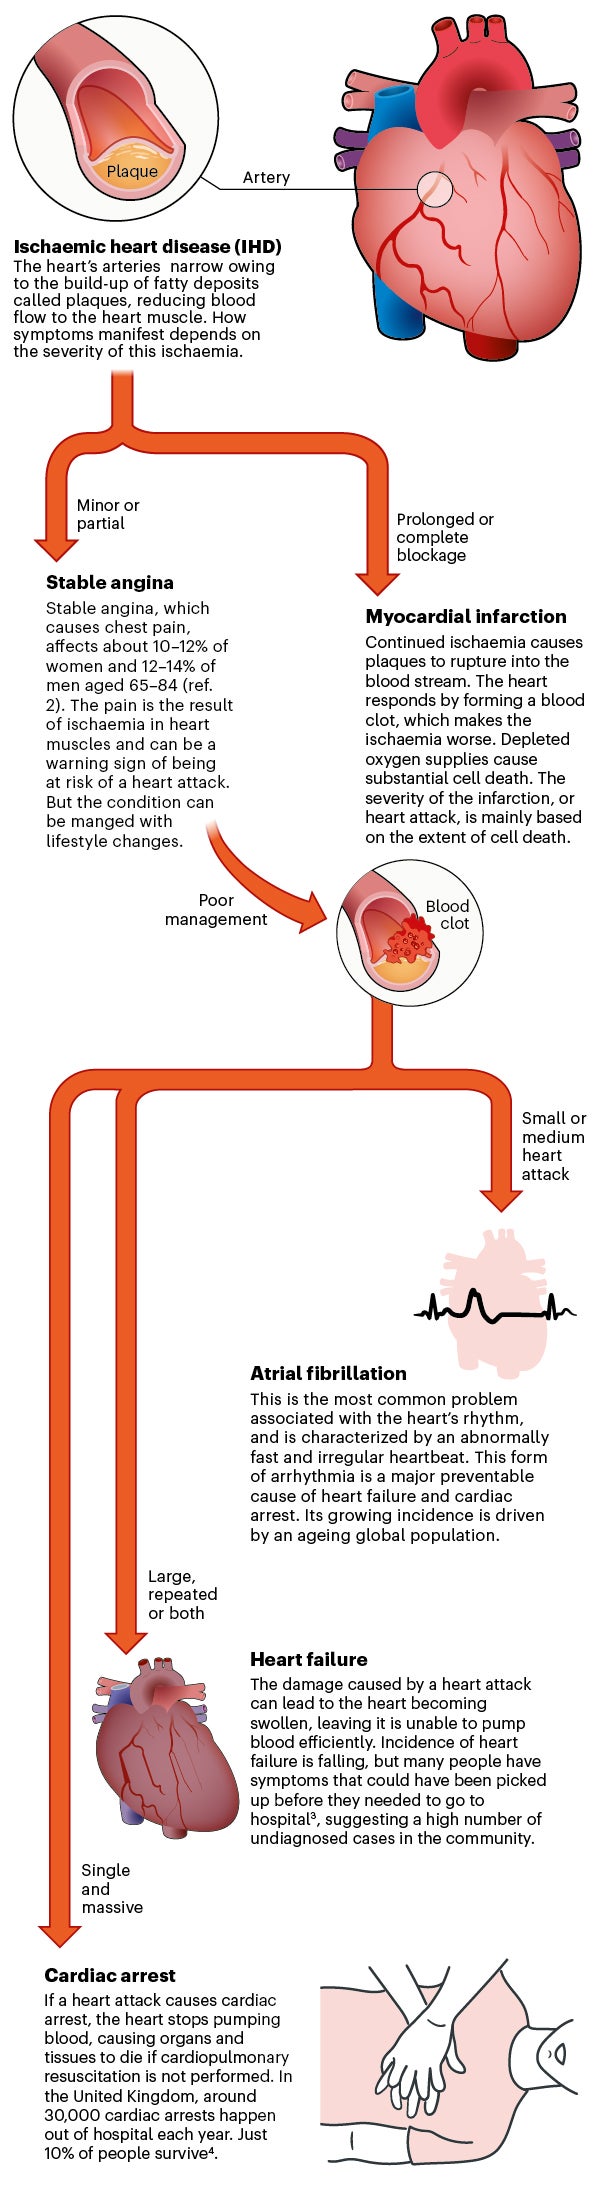 اینفوگرافیک توسعه بیماری ایسکمیک قلب را توصیف می کند.